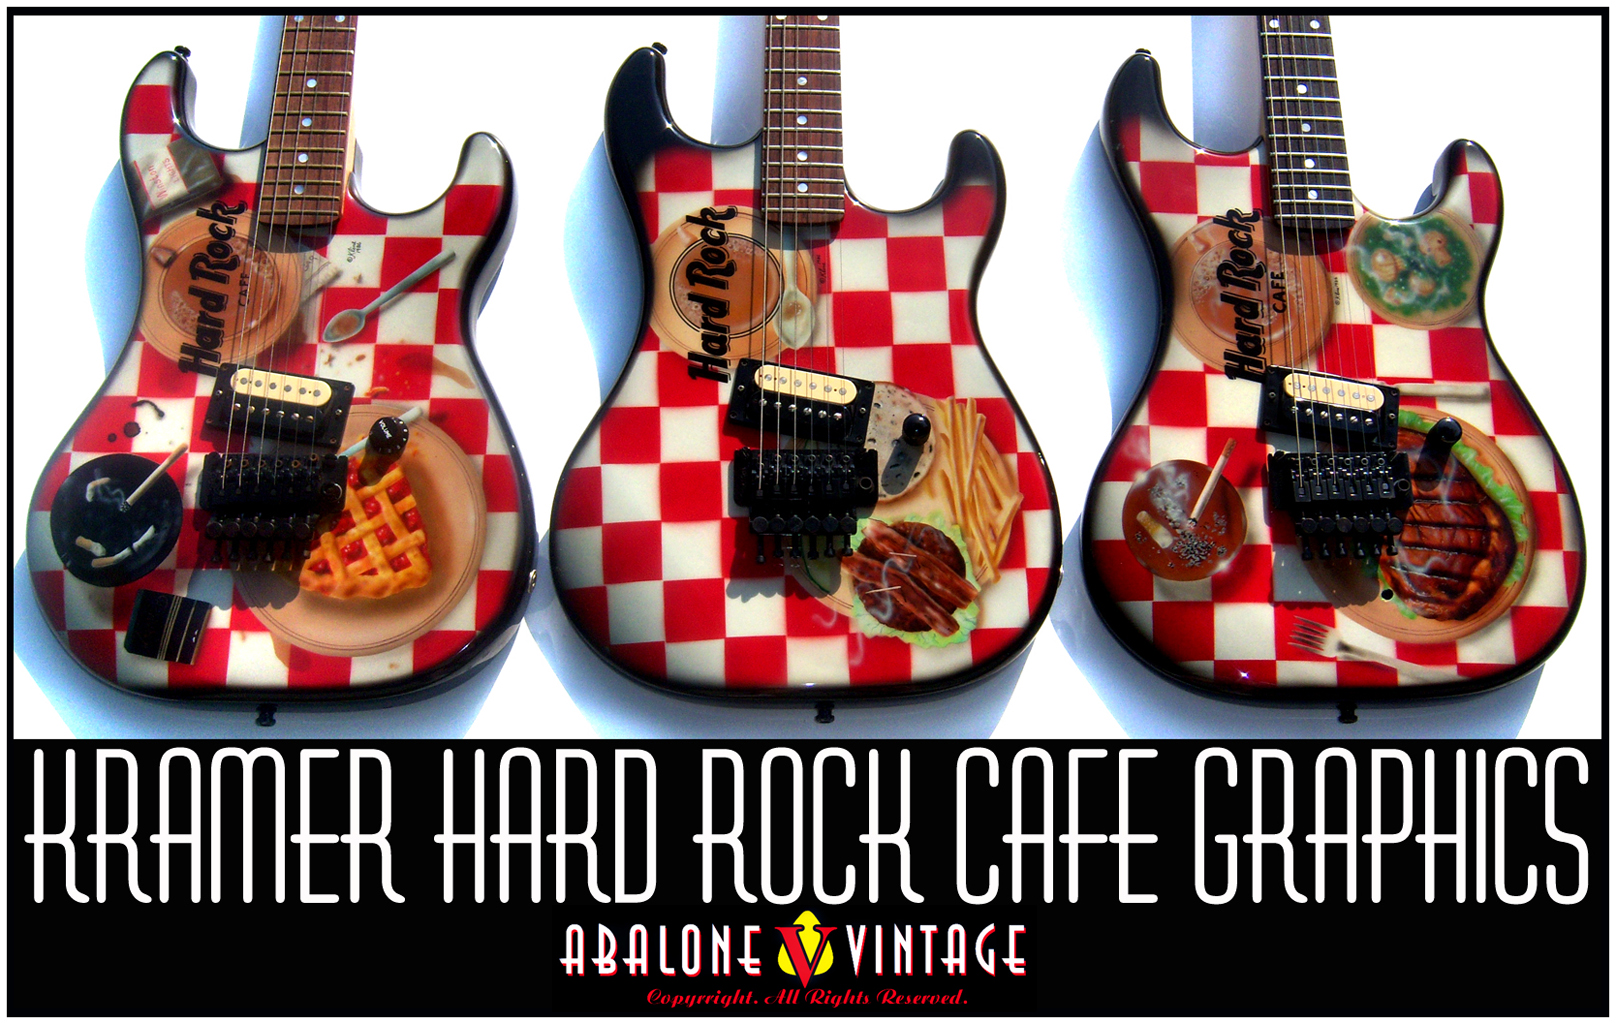 Vintage Kramer Hard Rock Cafe guitars